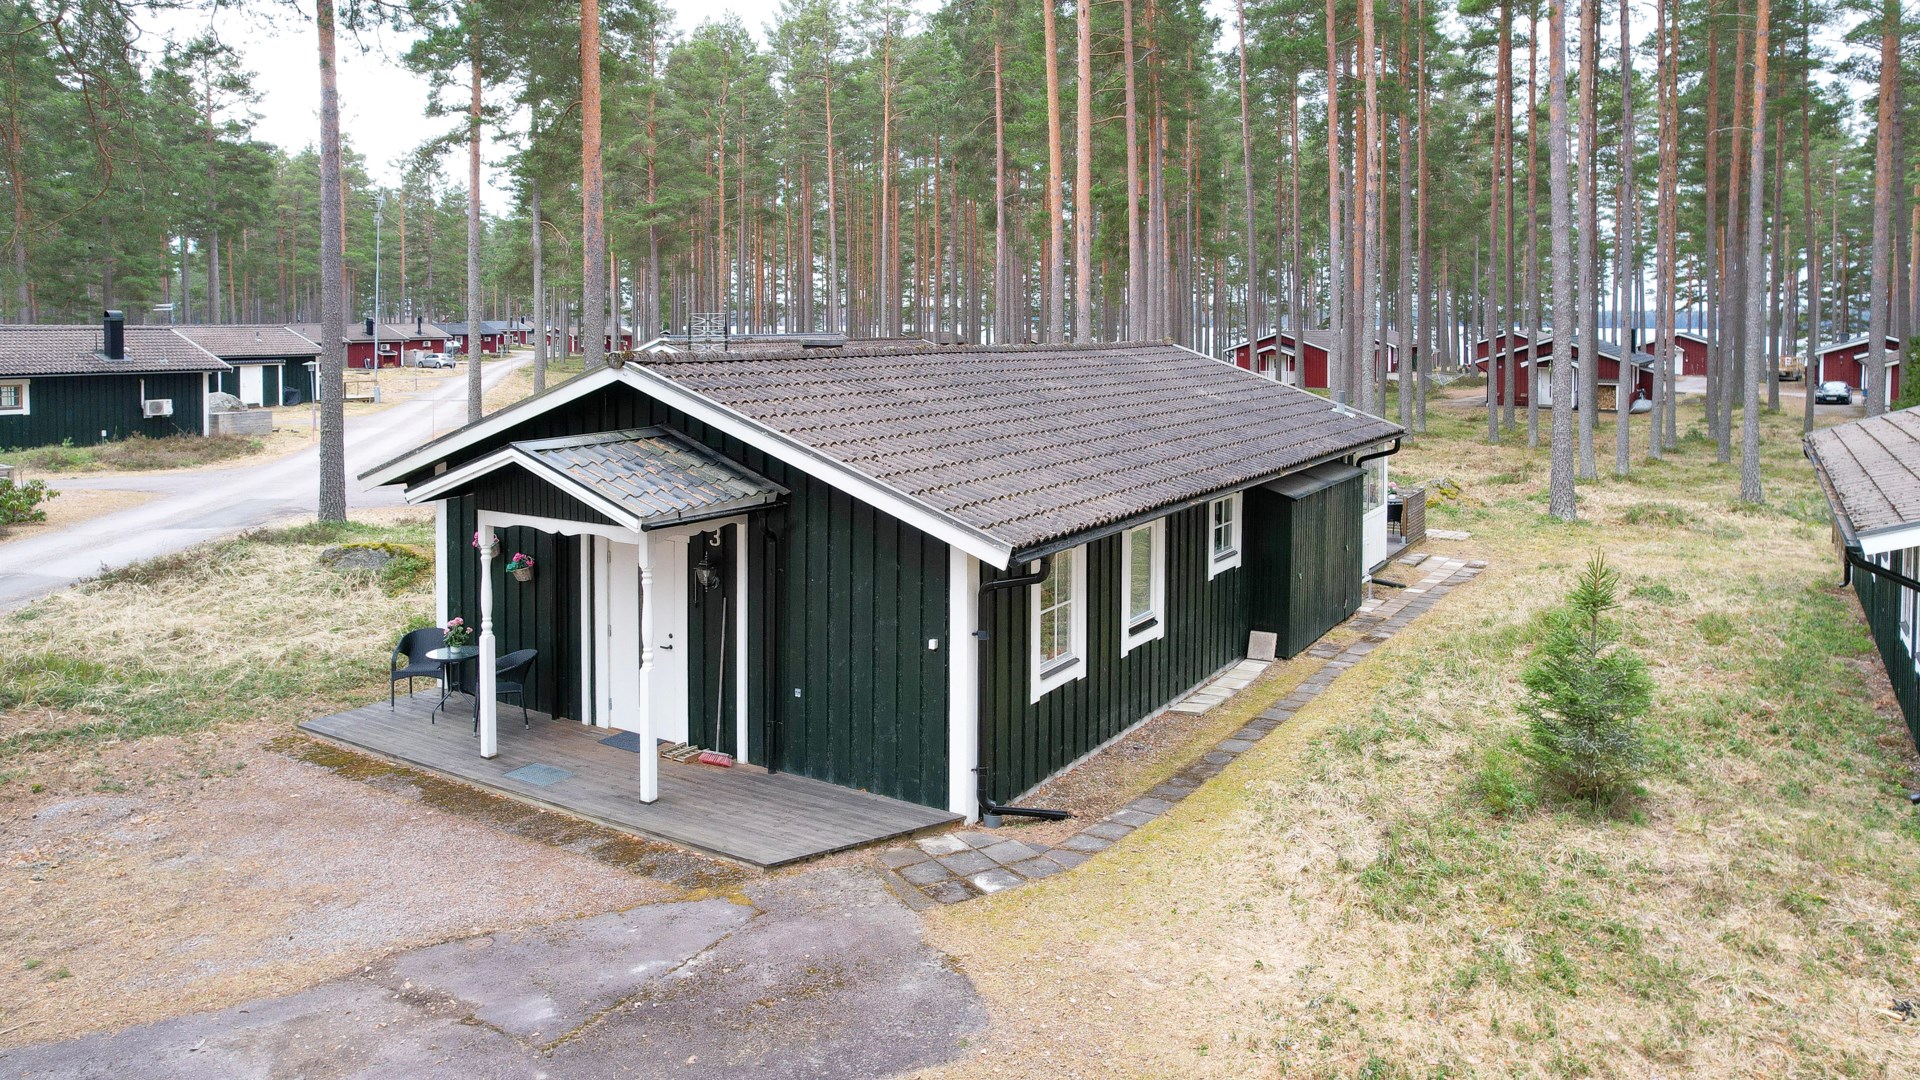 Bostadsrätt i Östa, Tärnsjö, Sverige, Östa 503